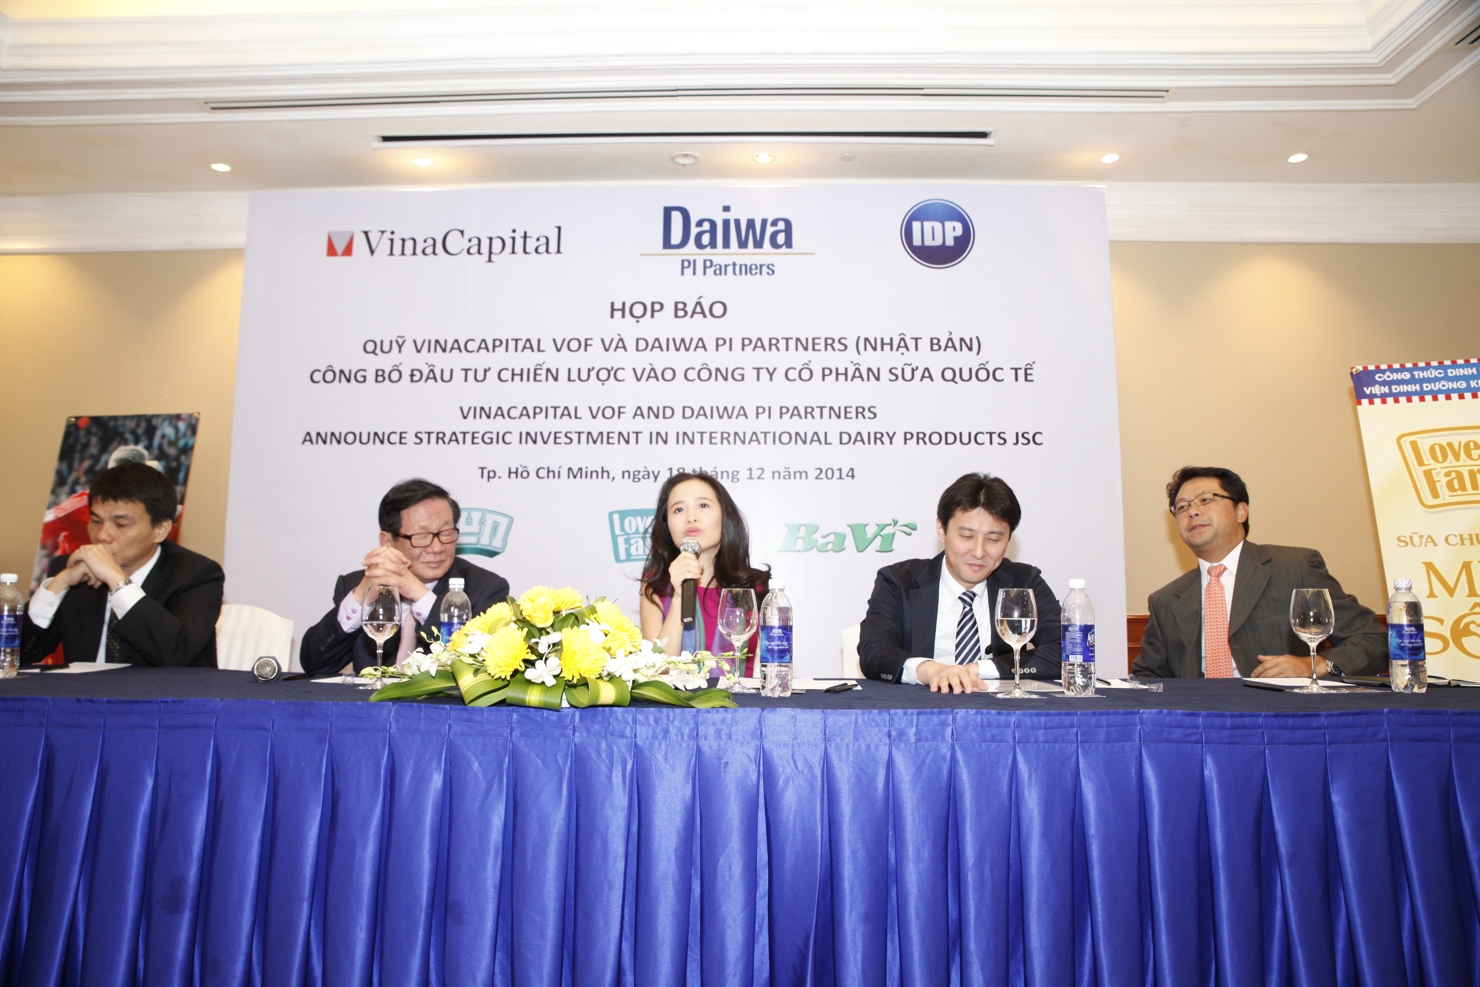 Sau lễ ký kết, VOF và Daiwa PI Partners sẽ là cổ đông lớn nhất, nắm giữ 70% cổ phần của IDP. Nguồn: T.Hương.